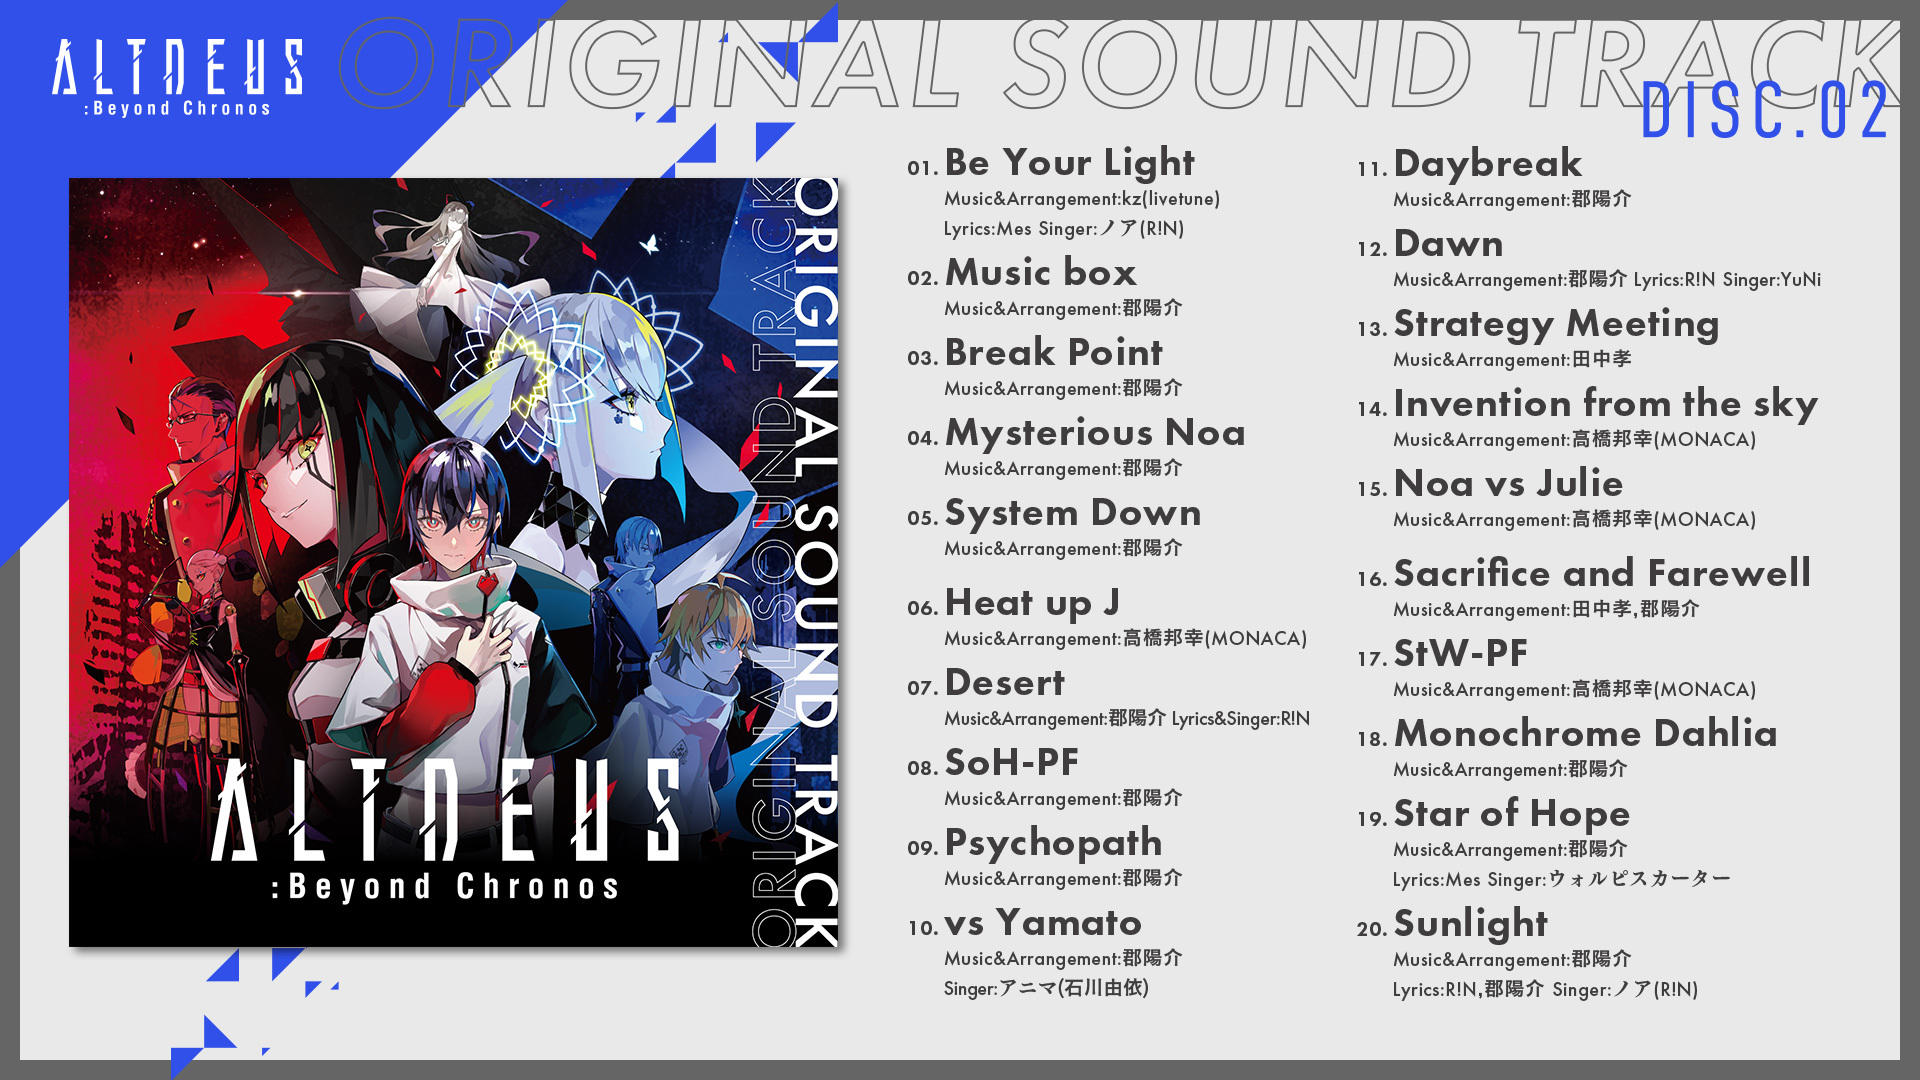 ALTDEUS: Beyond Chronos Sound Track